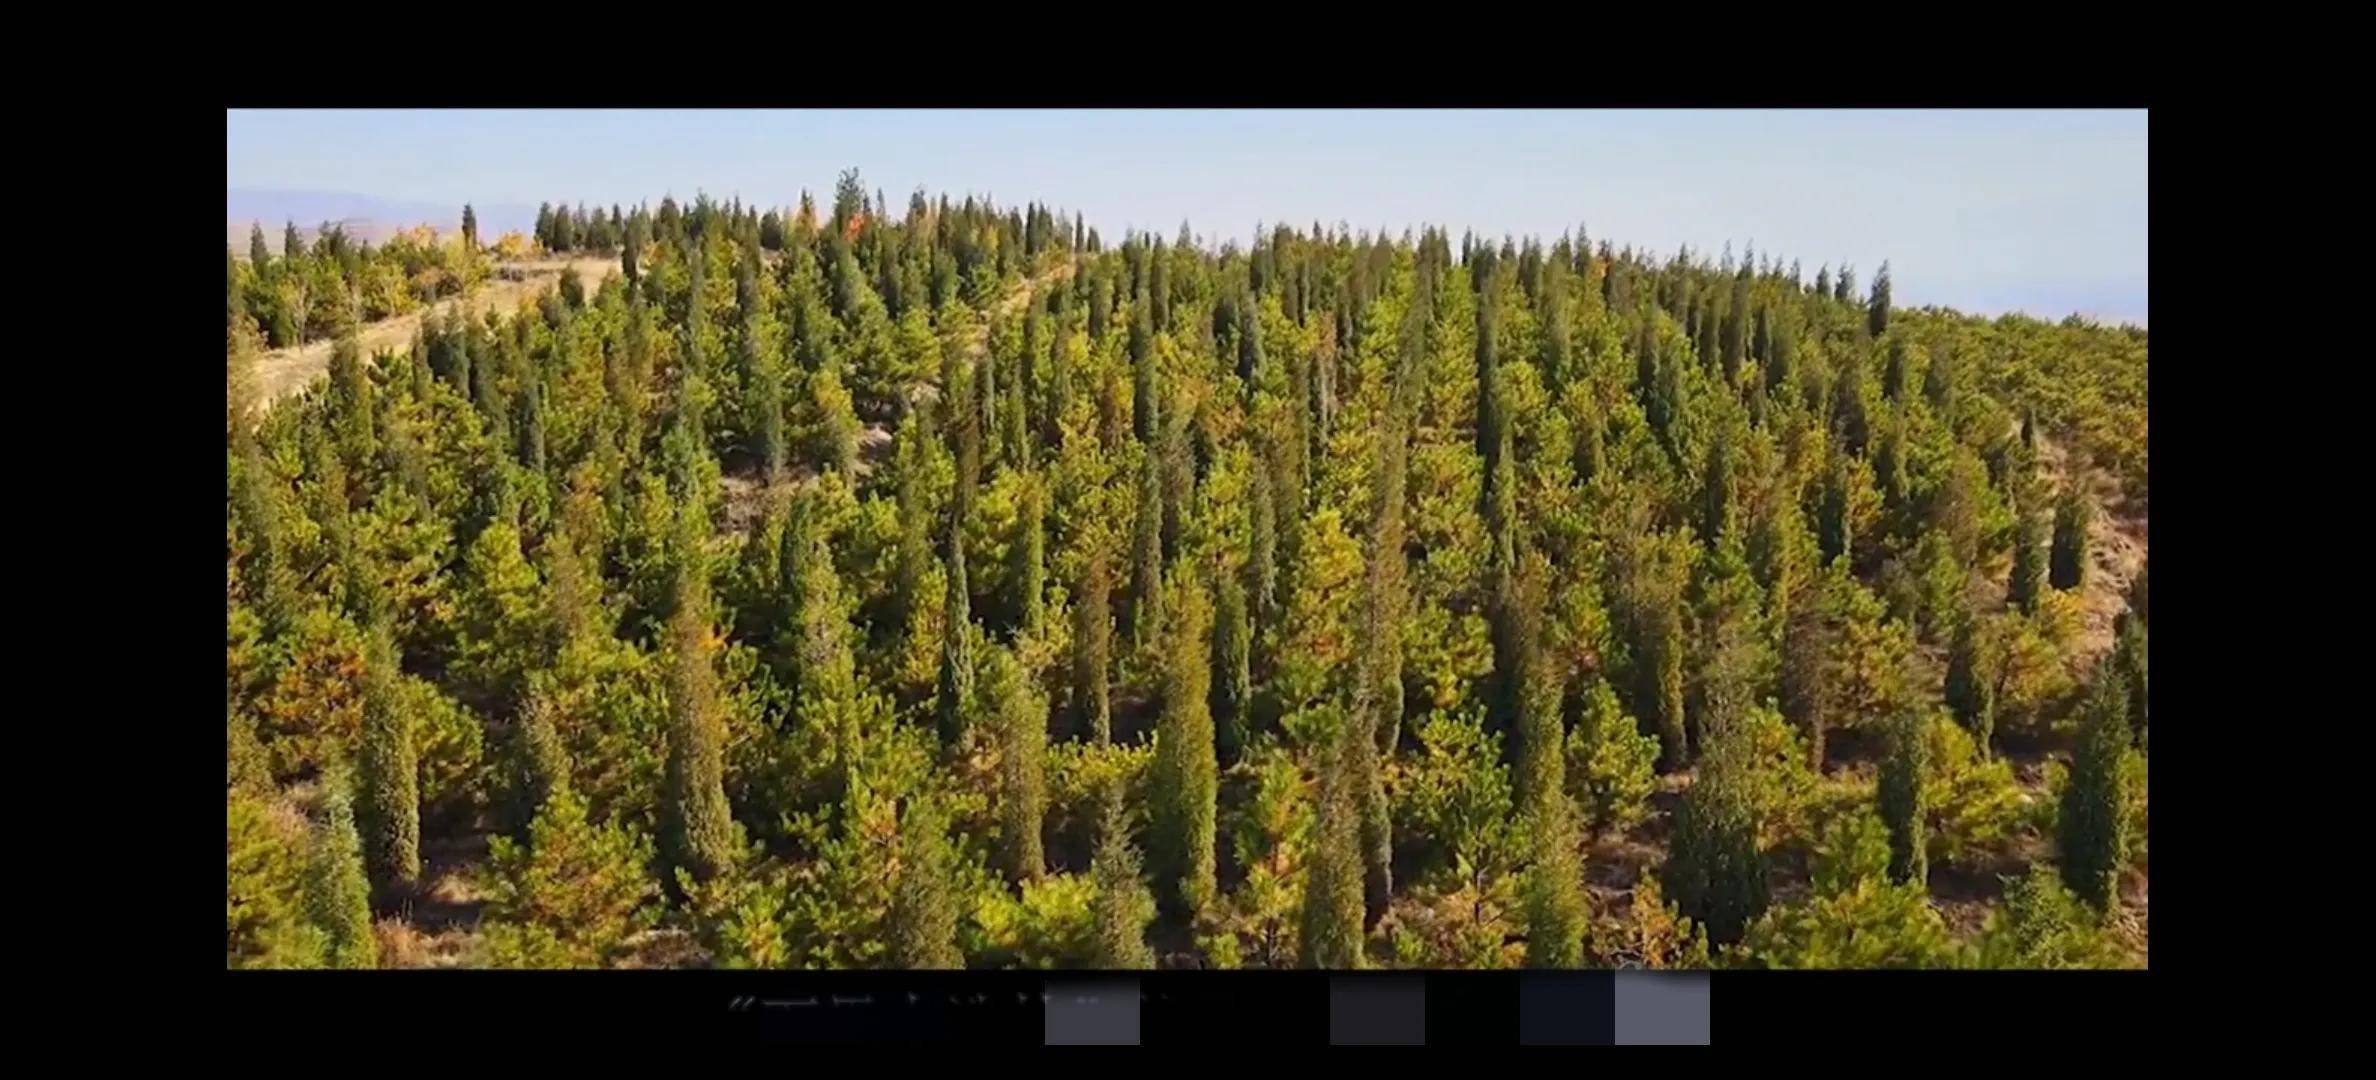 2004年,万里大造林已经发展到了项目的巅峰期,参观和投资的人川流不息